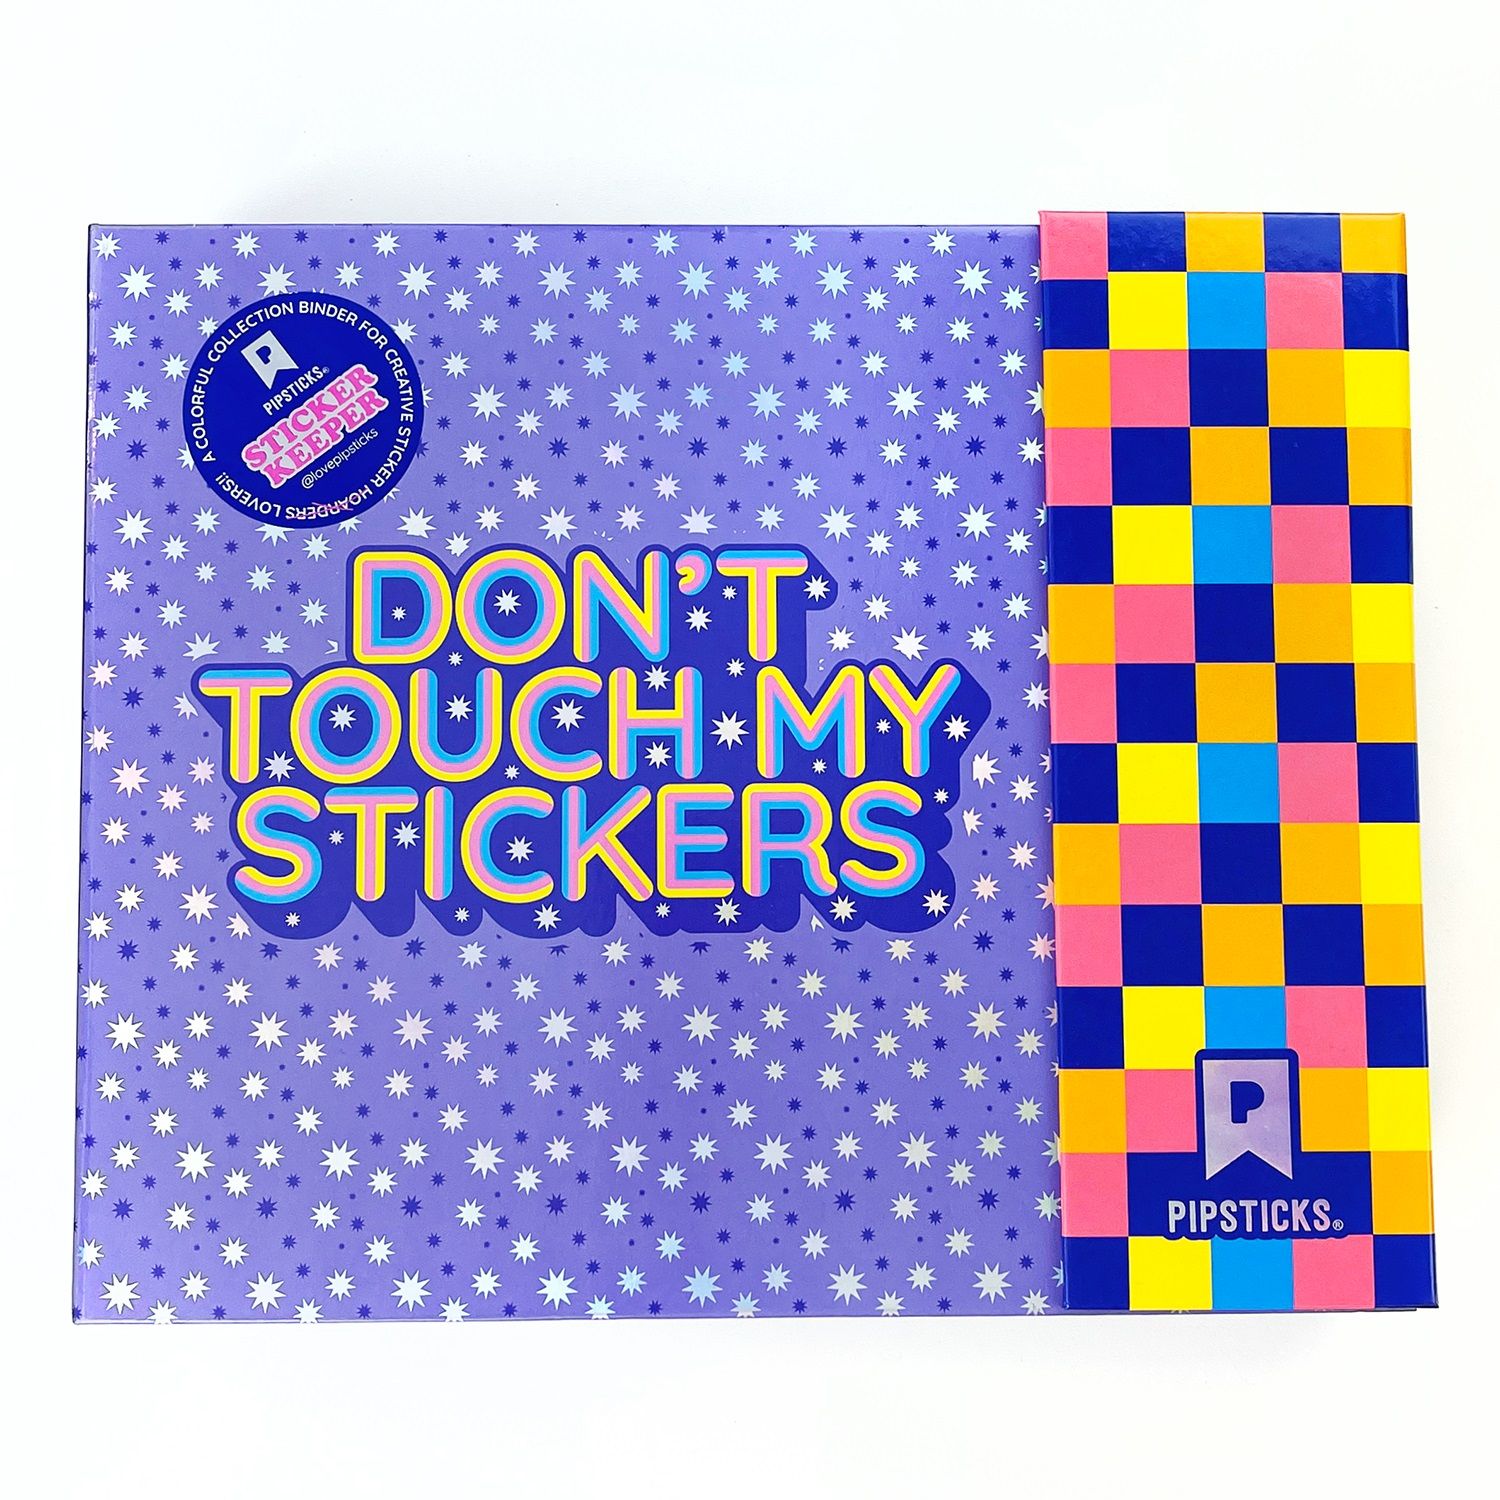 Pipsticks Sticker Collection Book!